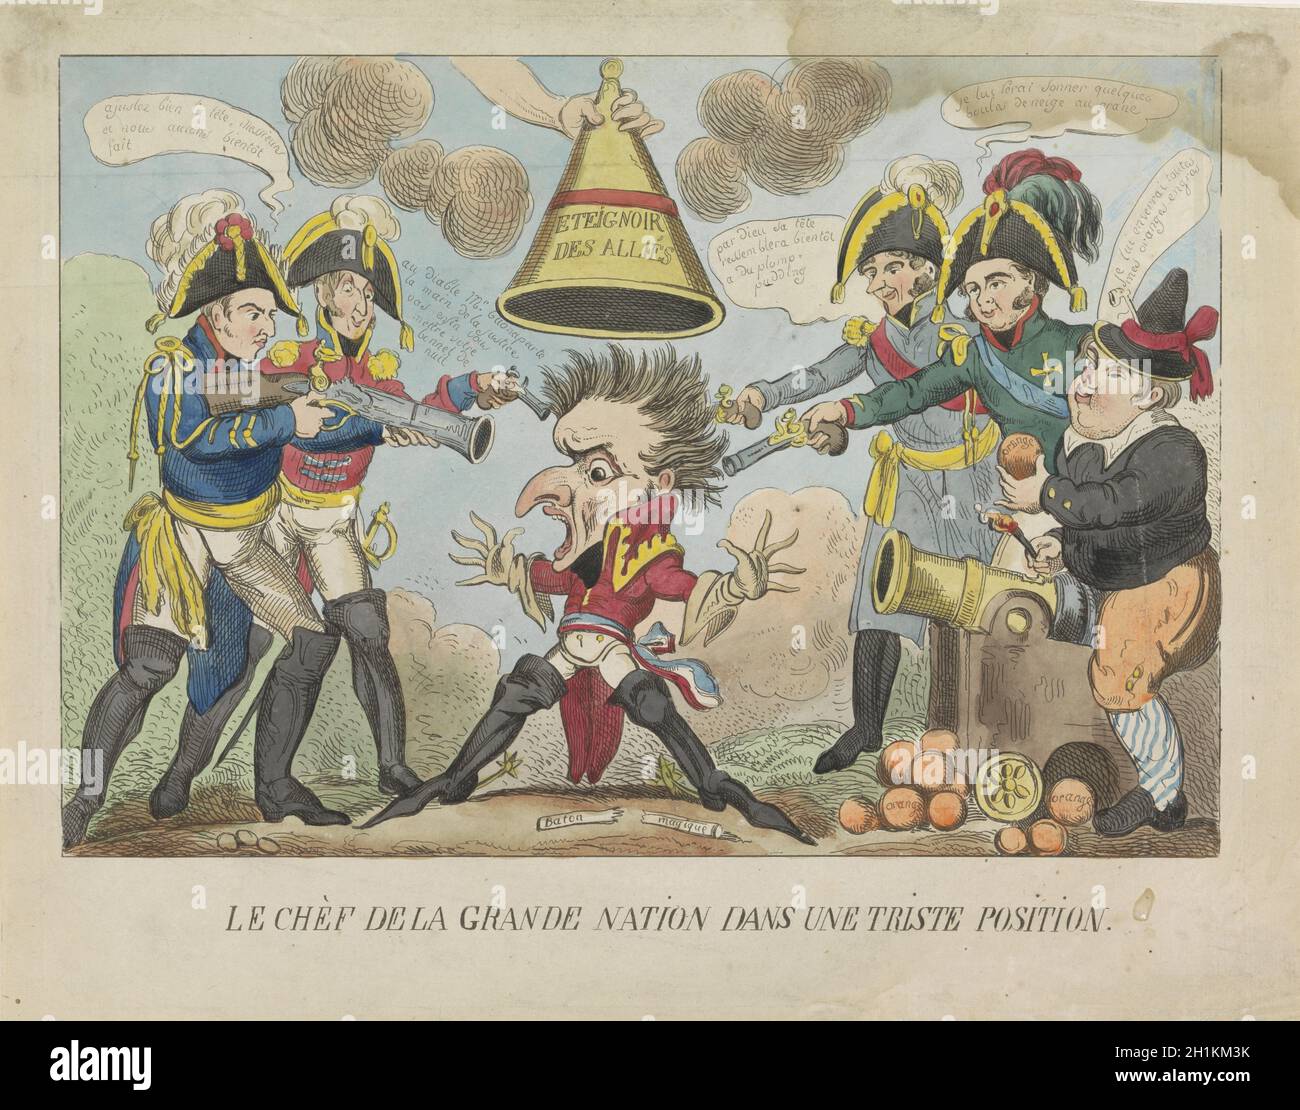 Napoleon wordt uitgedoofd, 1813-1814, George Cruikshank, 1814 - 1815 Stockfoto